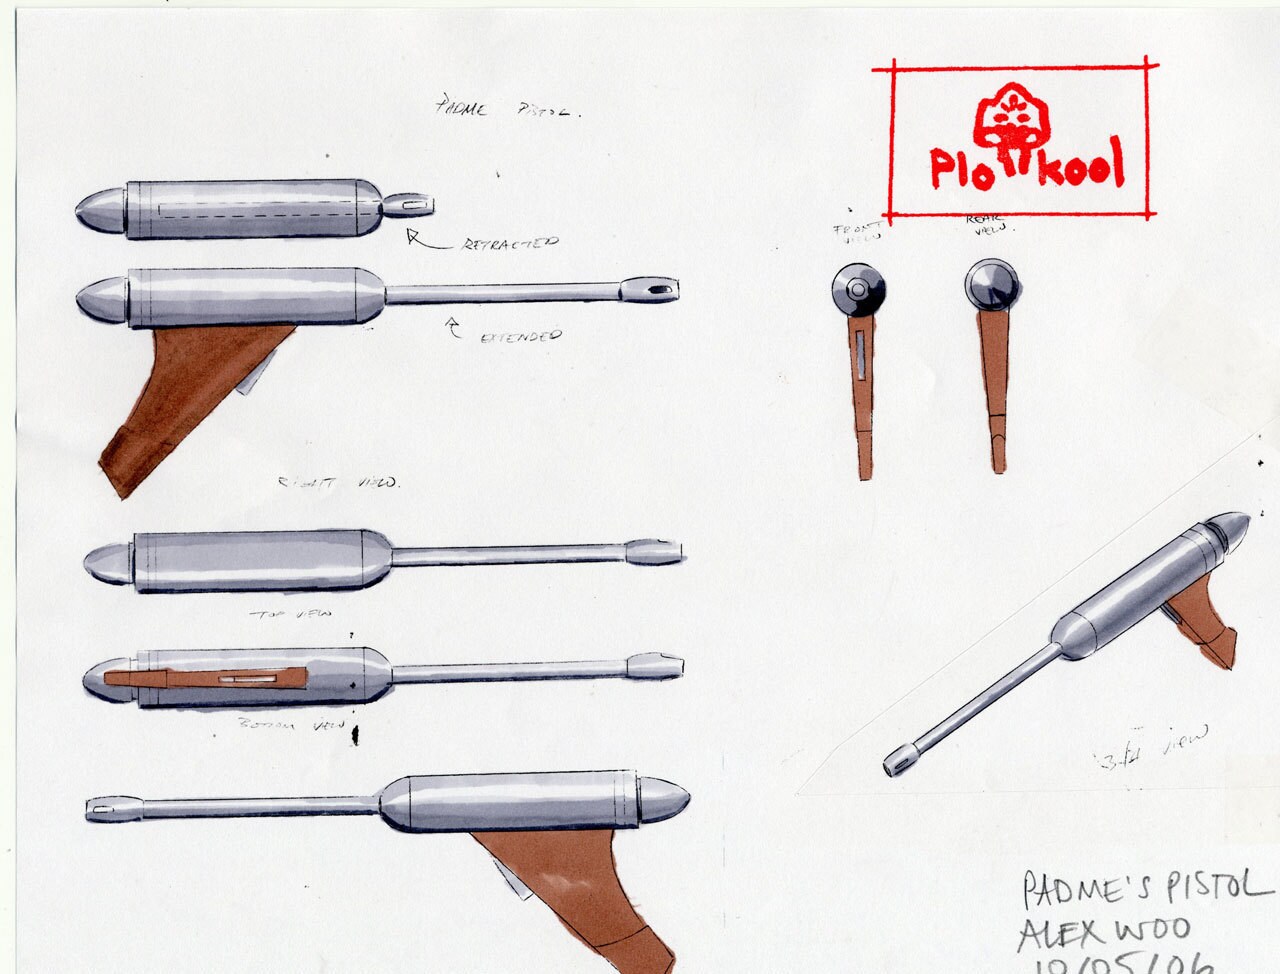 Naboo blaster pistol design illustrations